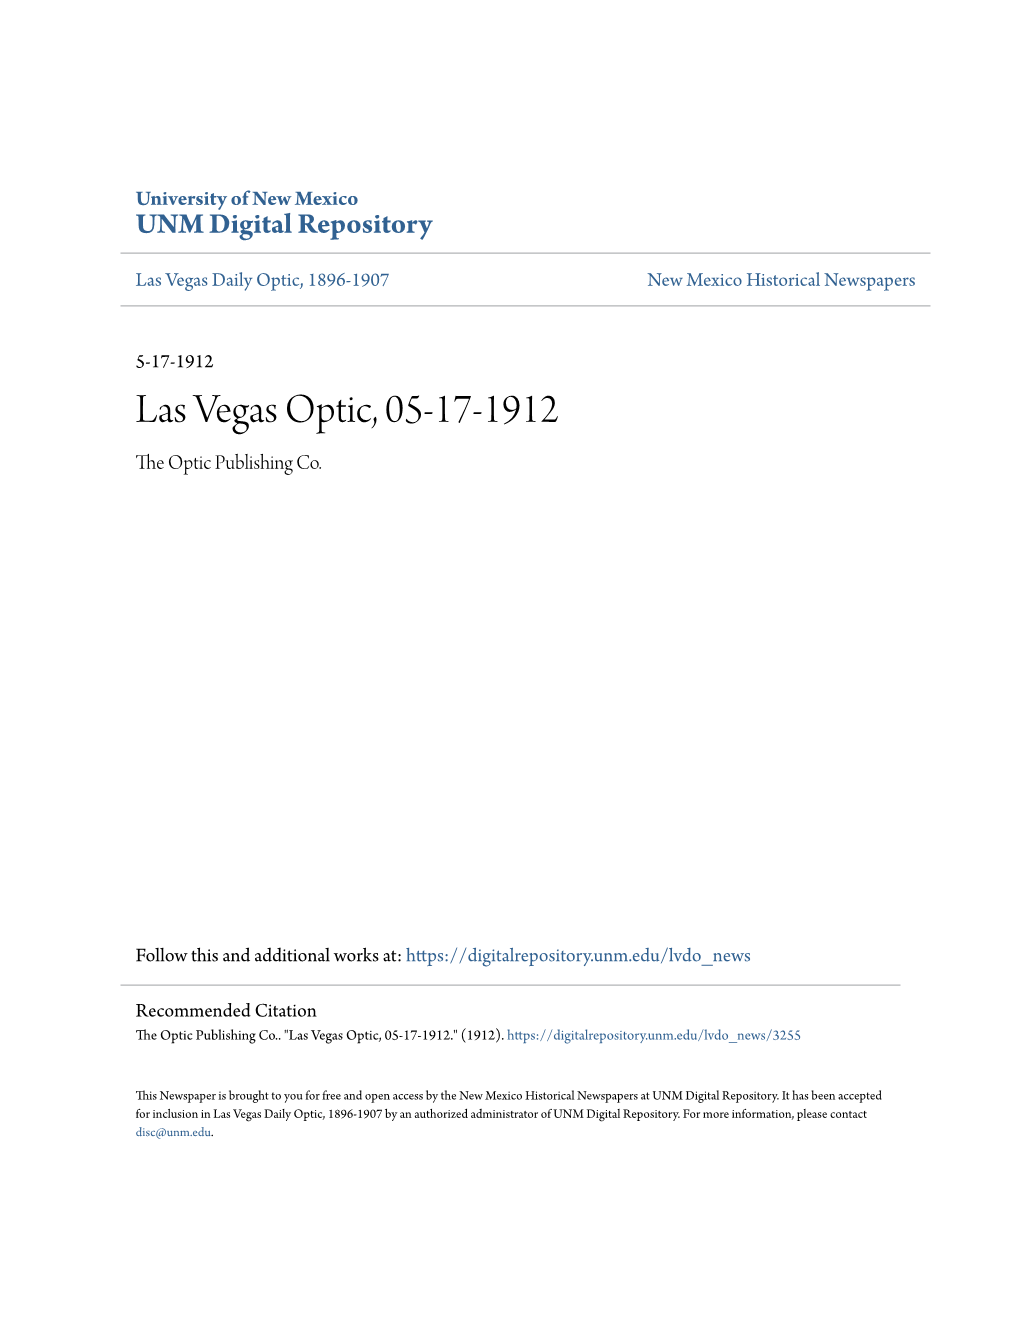 Las Vegas Optic, 05-17-1912 the Optic Publishing Co